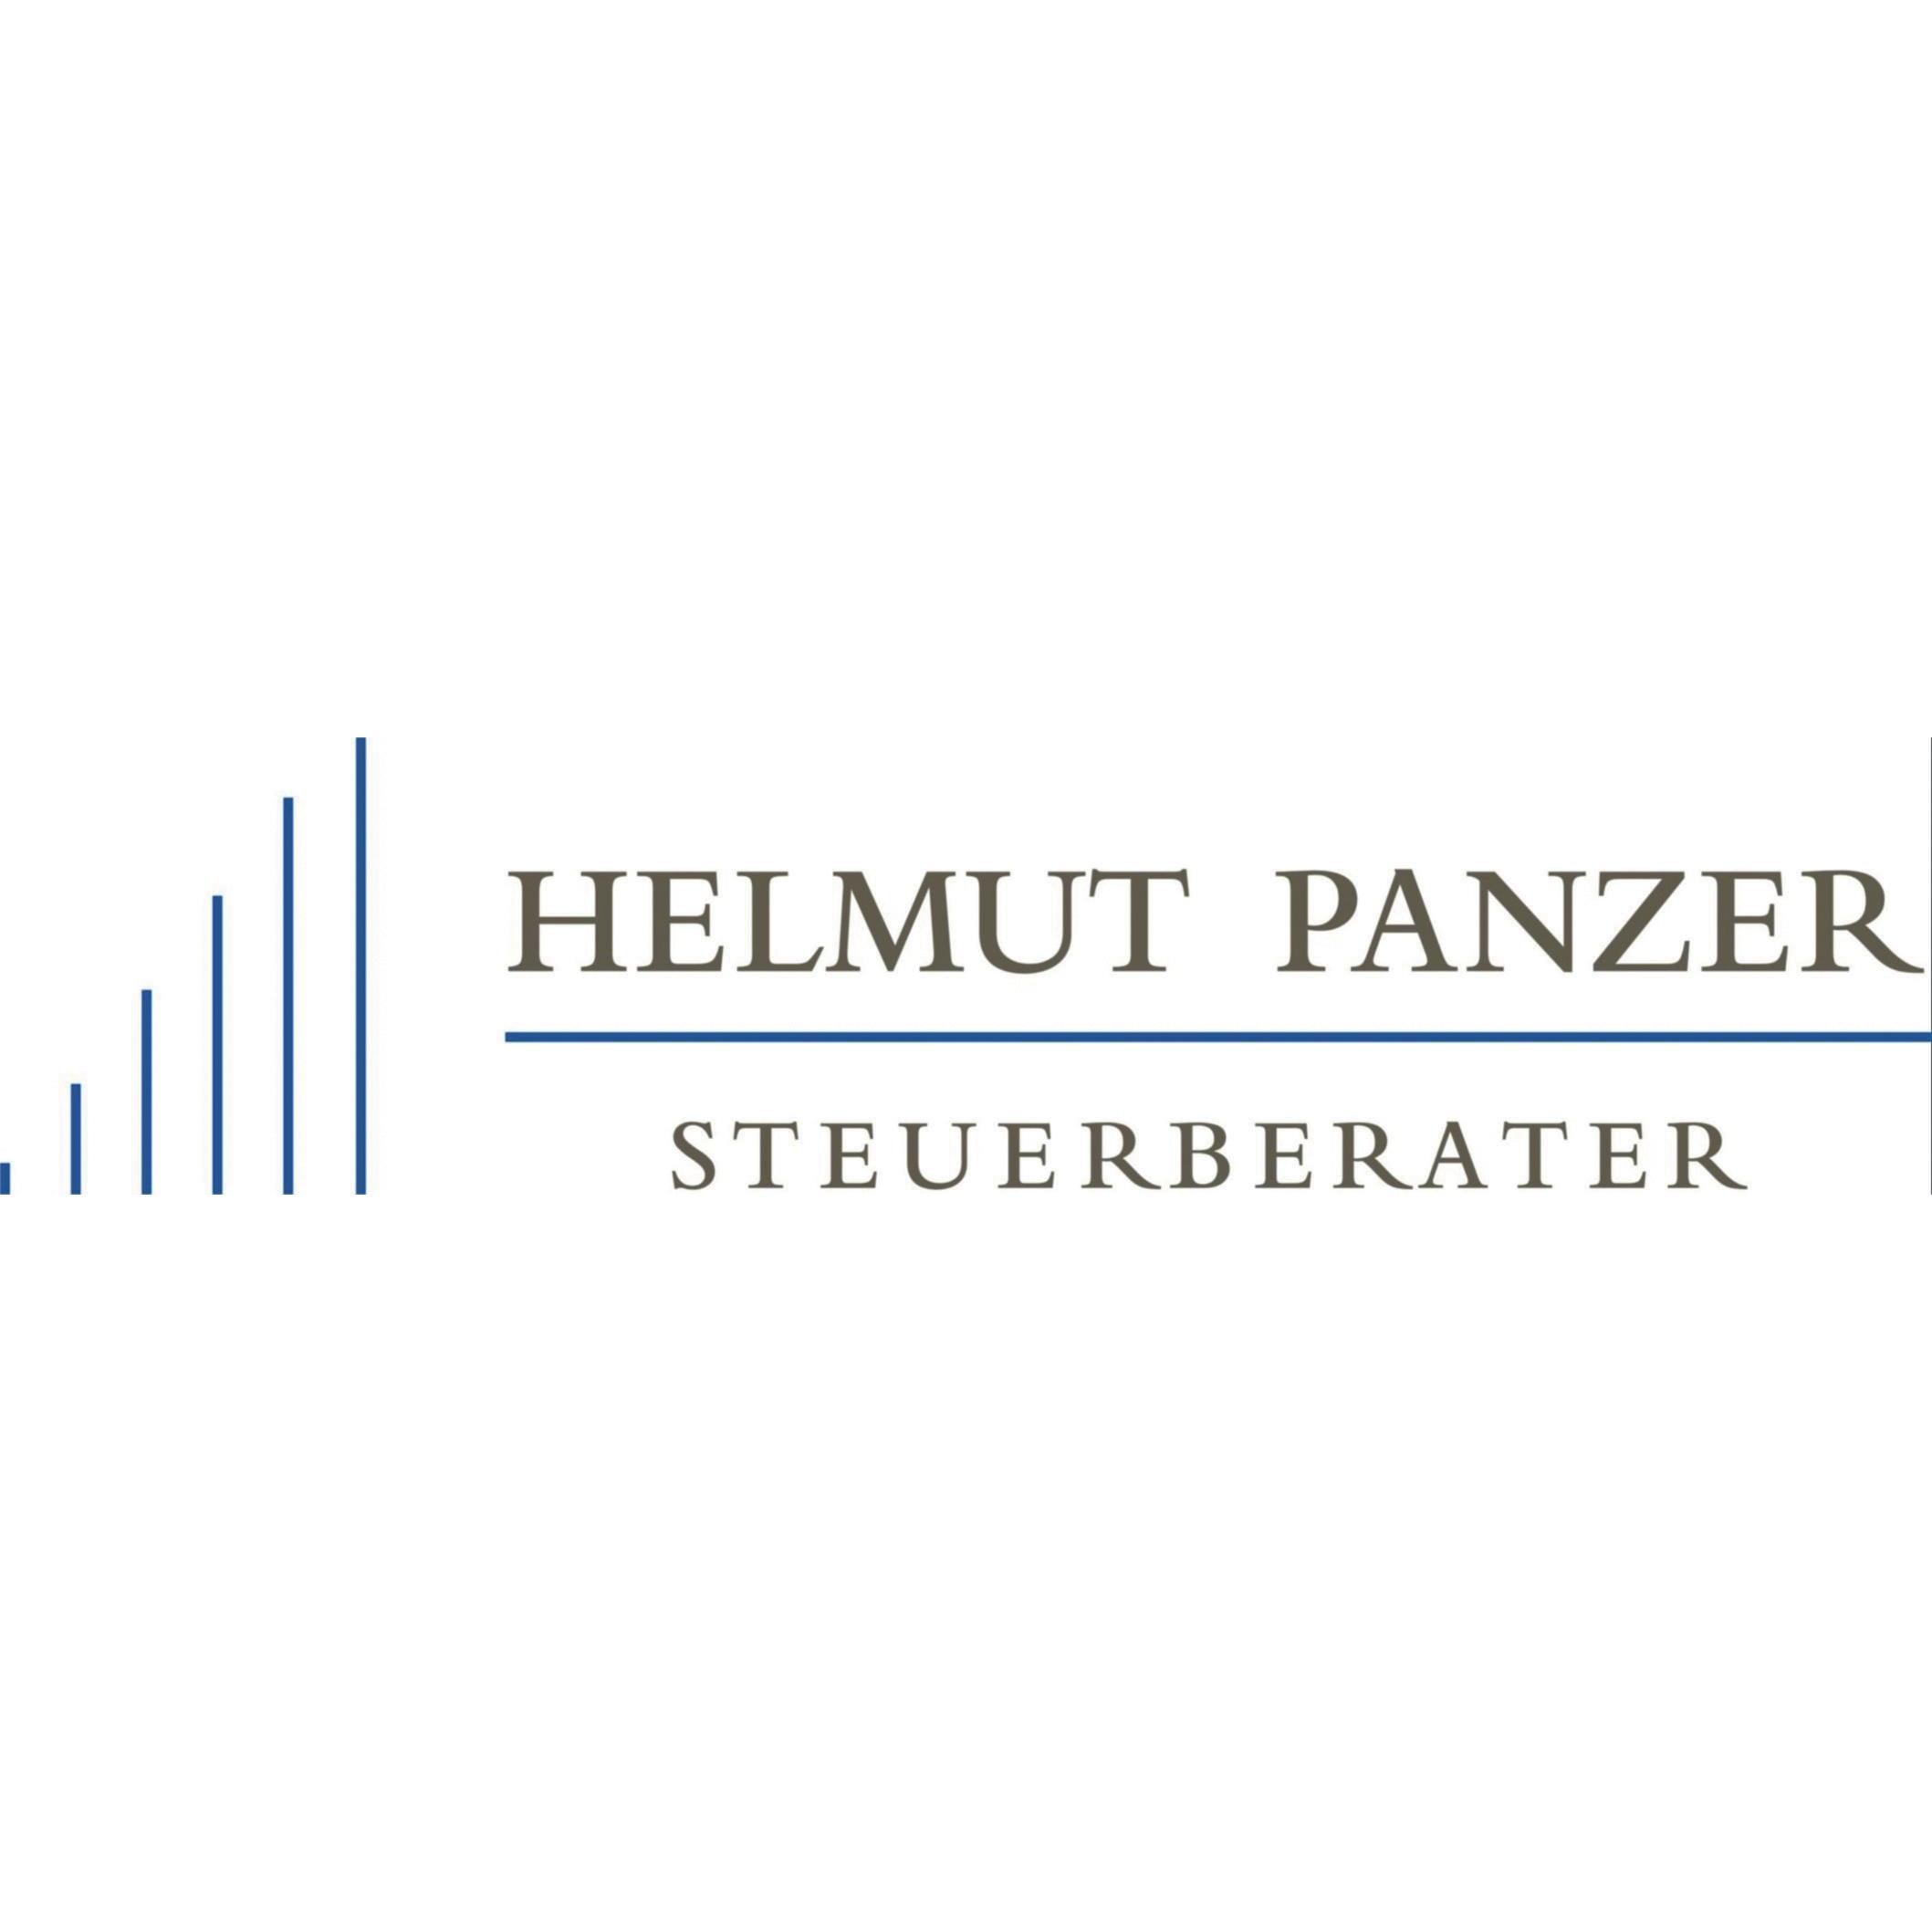 Helmut Panzer Steuerberater Logo